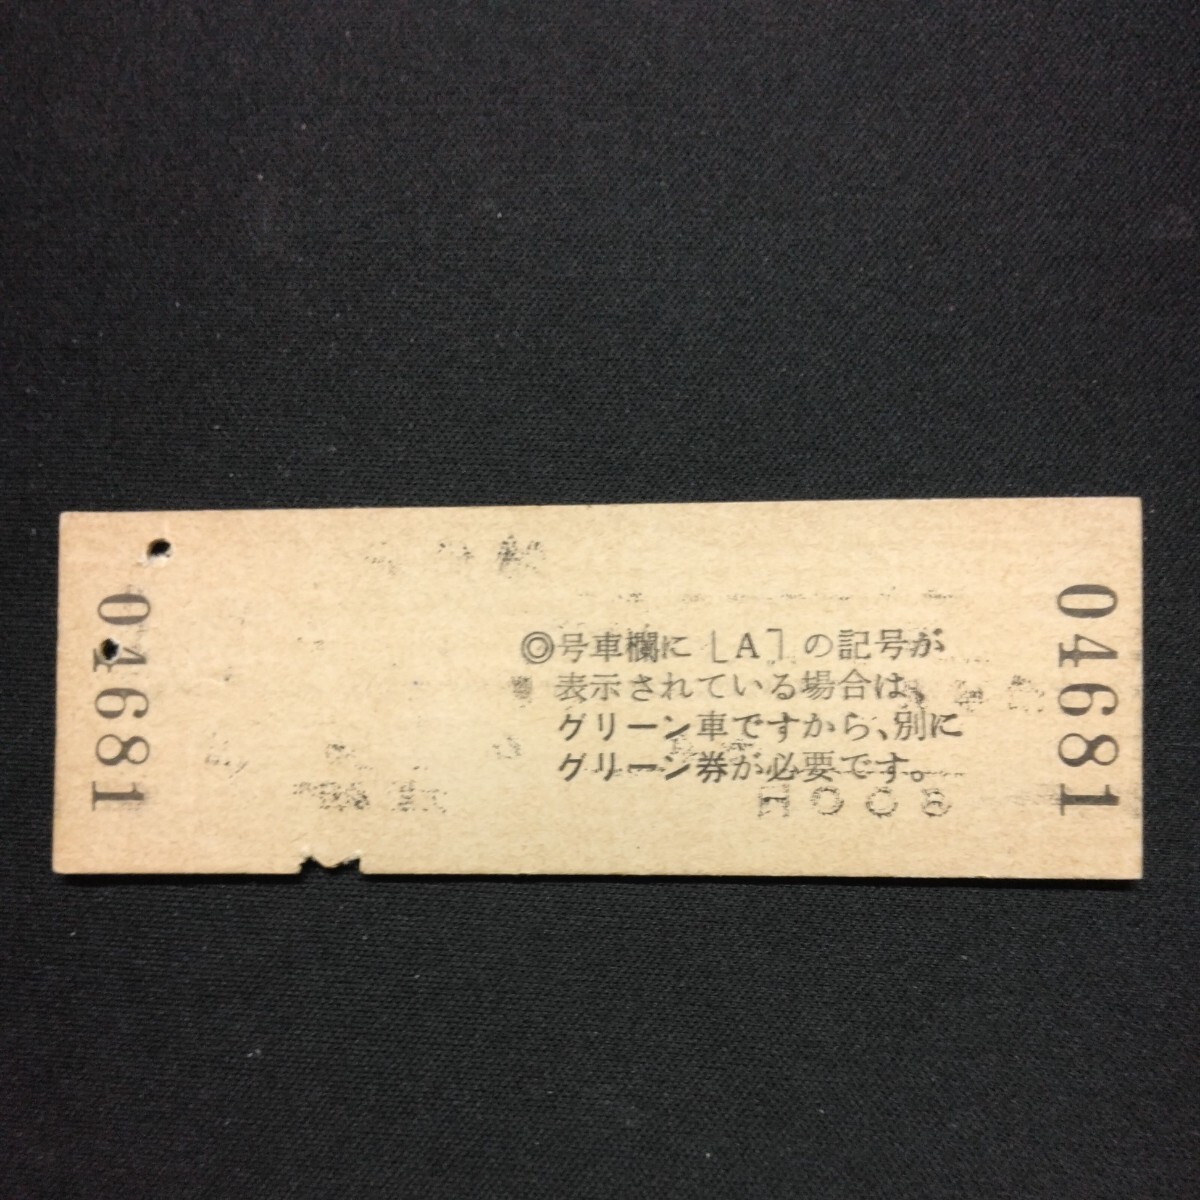 【04681】白山1号 特急券 上田→上野 D型 乗車券 硬券 国鉄 古い切符の画像2